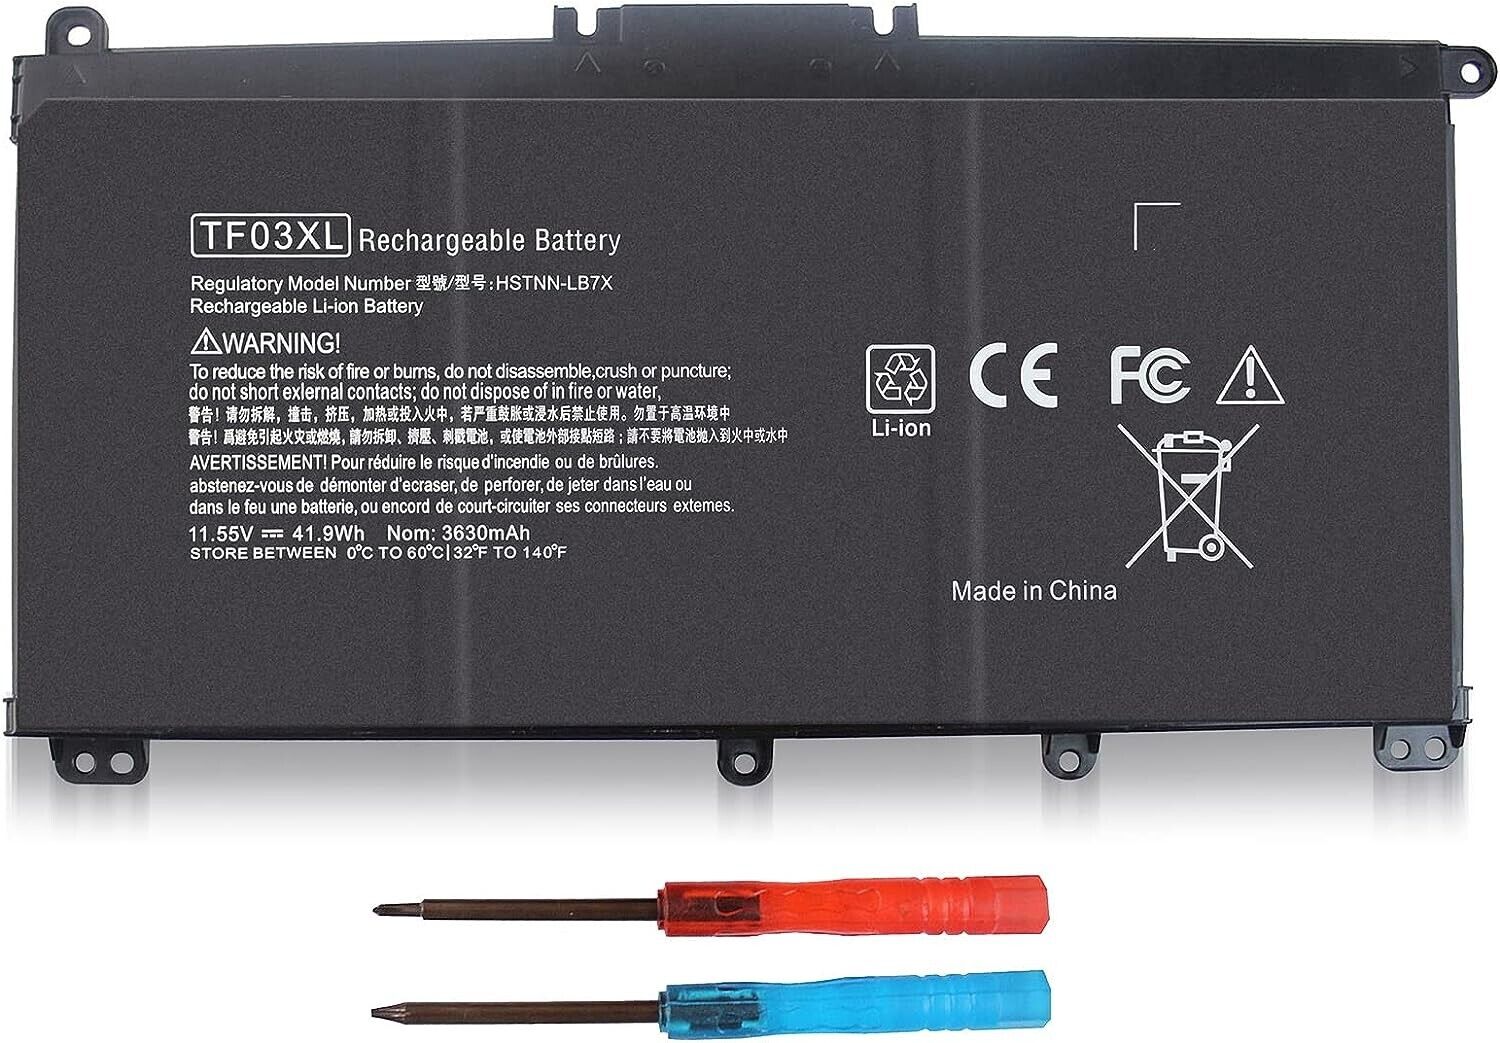 GJKNX Battery [68Wh/7.6V] for DELL- Latitude 5580 5480 5280 5490 5580 5590 E5480